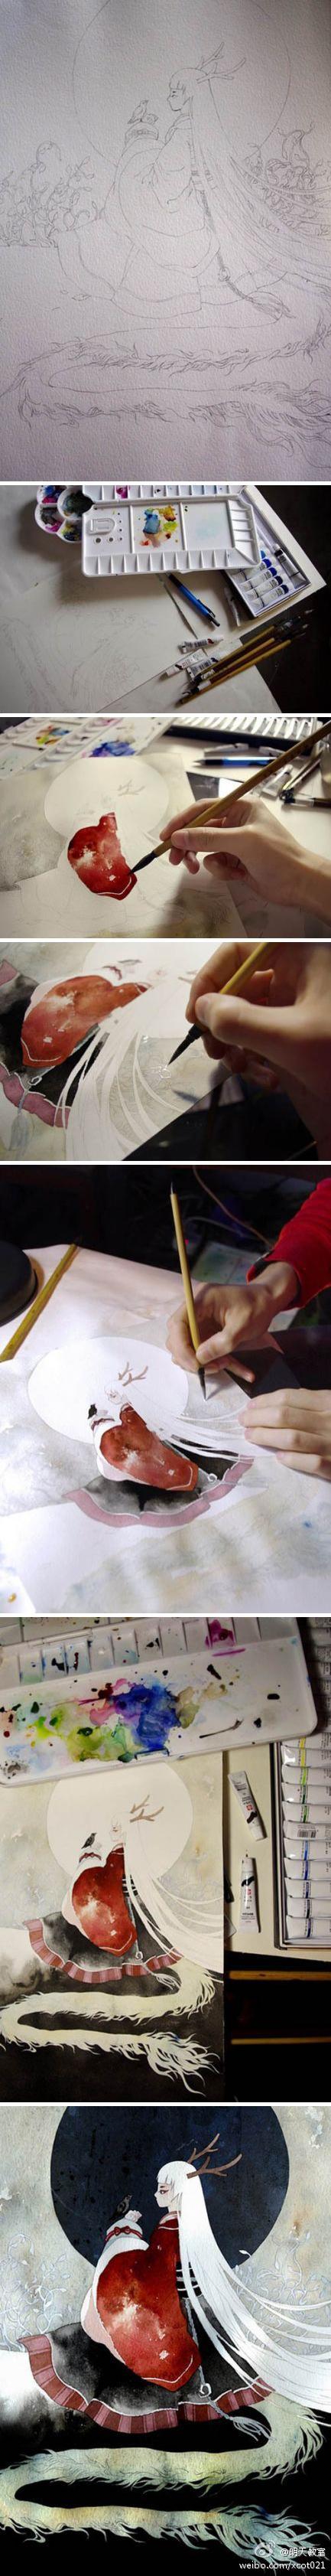 广州mario的水彩作品《龙女》的绘画过程